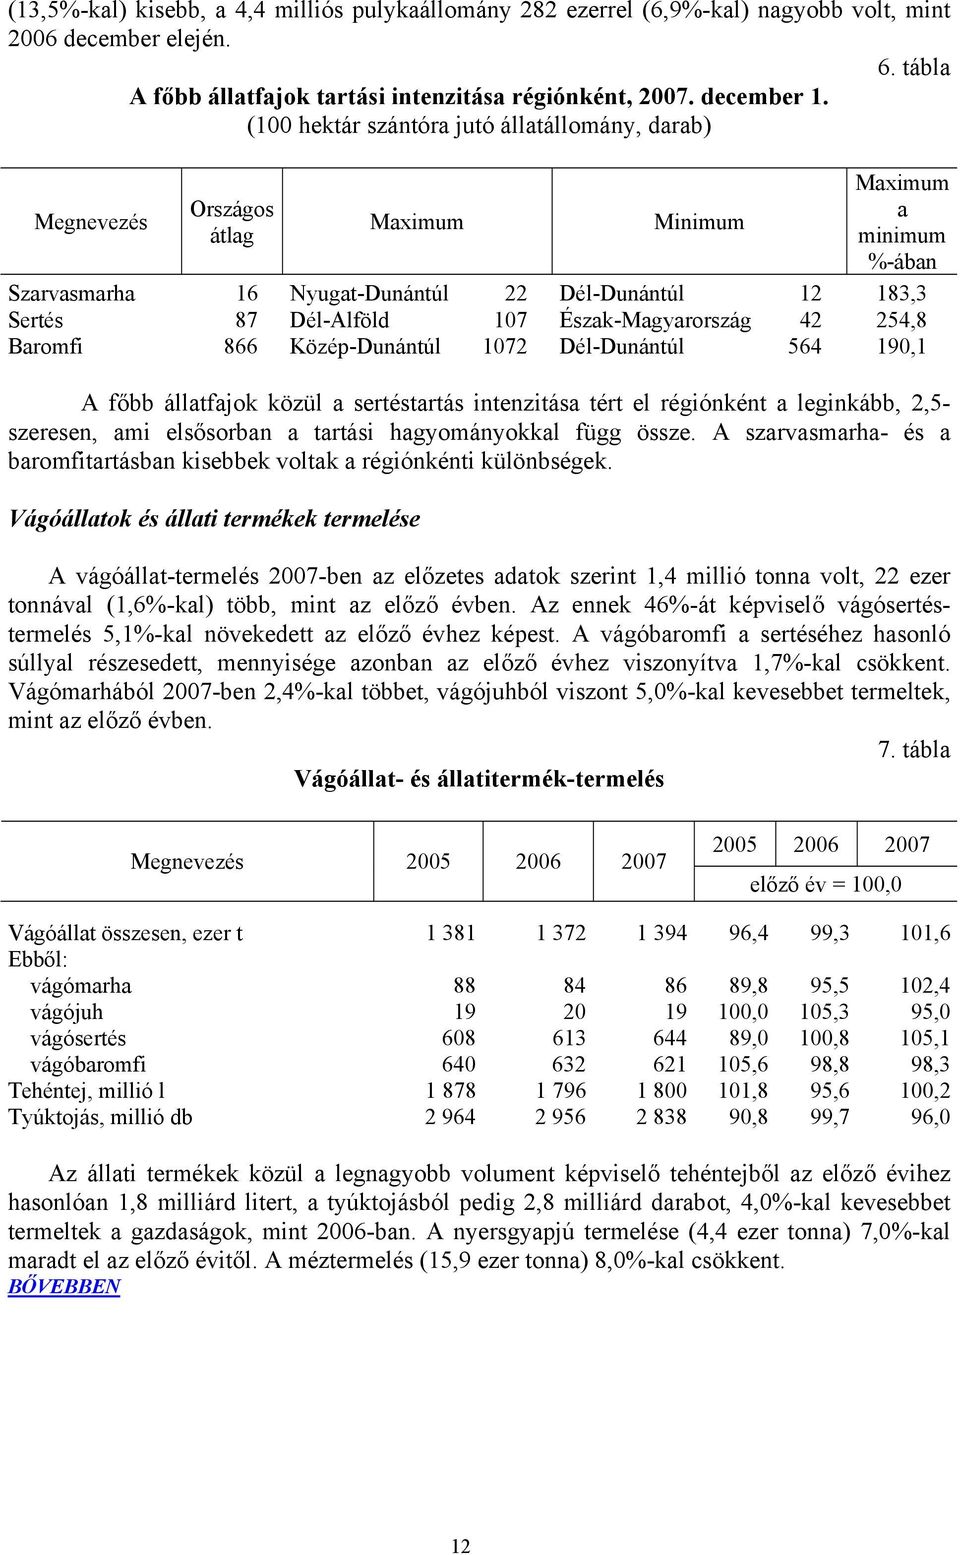 Észak-Magyarország 42 254,8 Baromfi 866 Közép-Dunántúl 1072 Dél-Dunántúl 564 190,1 A főbb állatfajok közül a sertéstartás intenzitása tért el régiónként a leginkább, 2,5- szeresen, ami elsősorban a